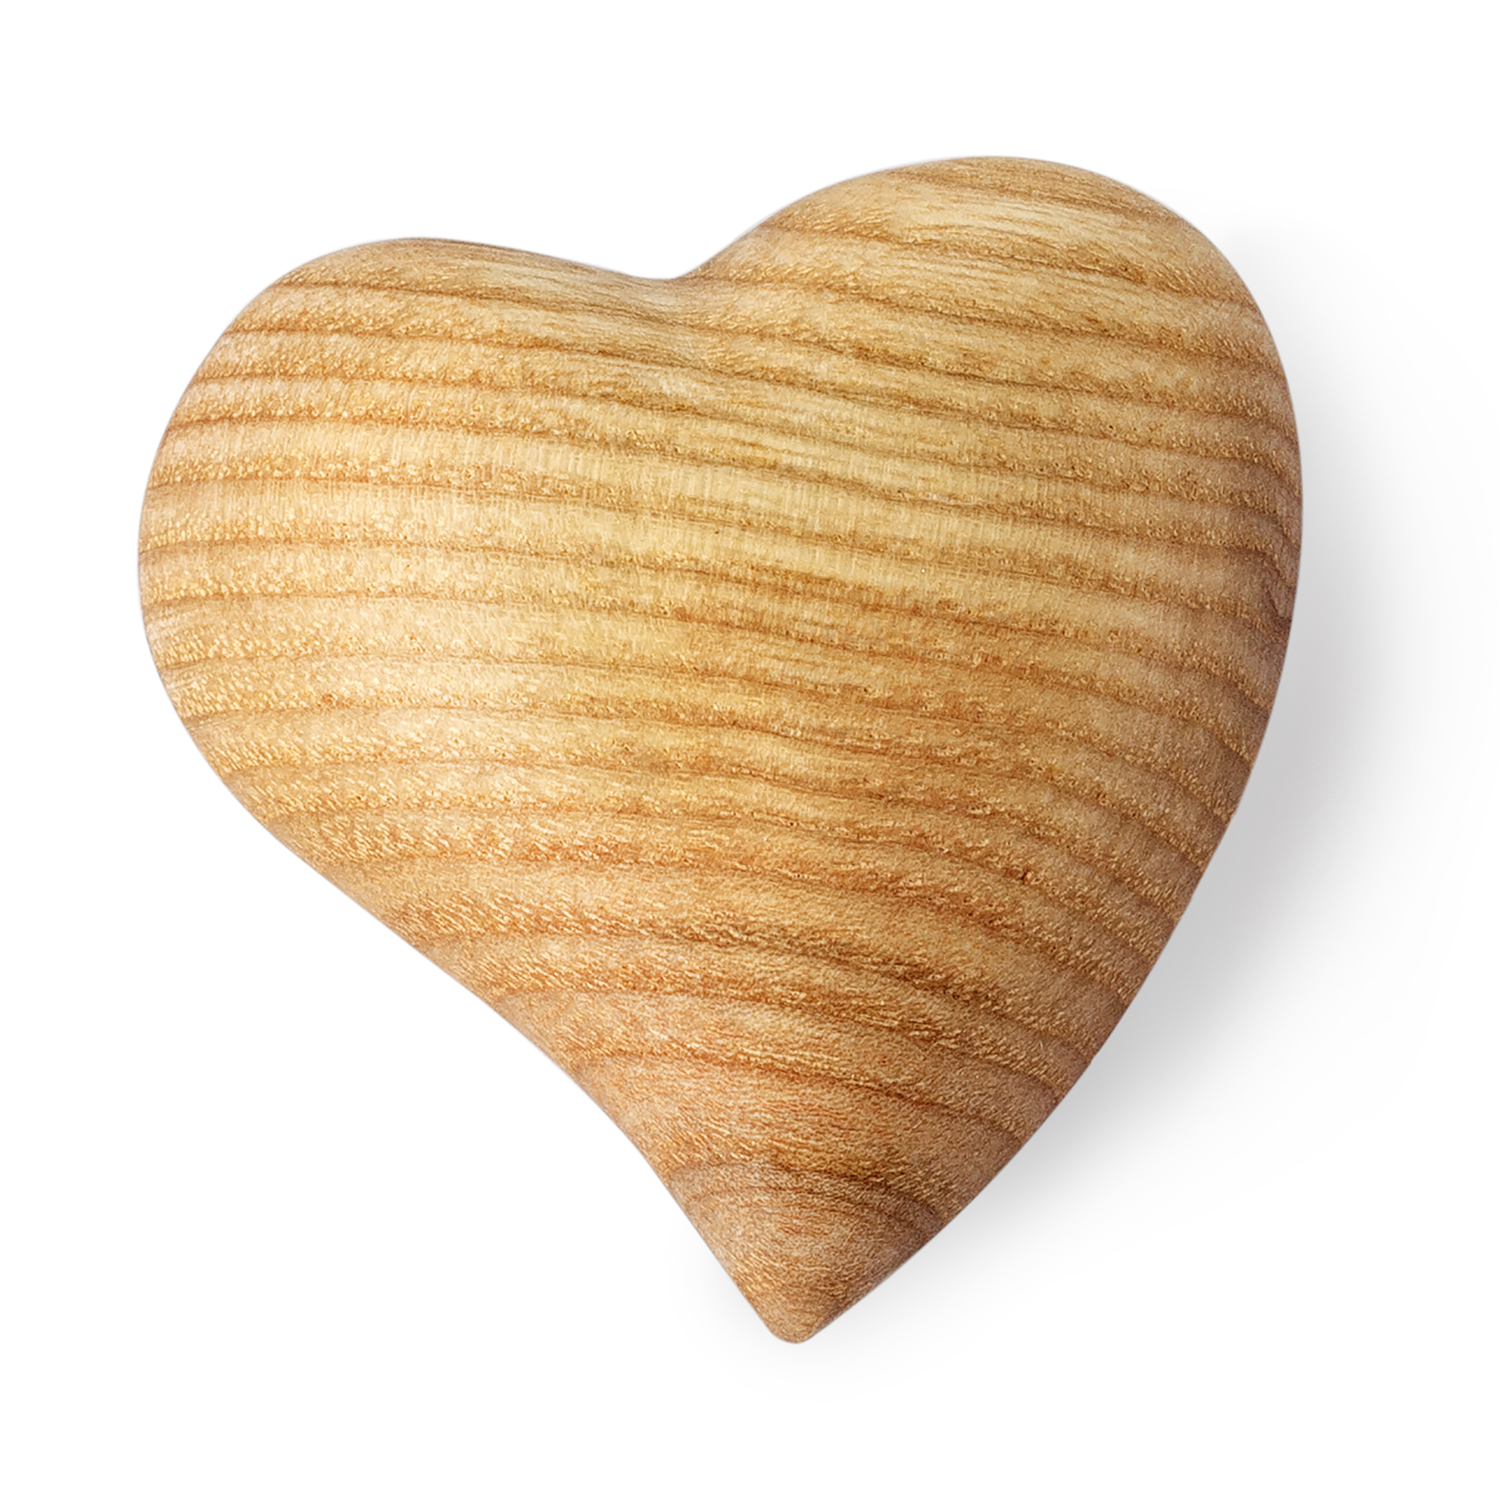 Natural 3D Wood Heart & Rustic Handmade Wood Heart Decor - Forest Decor